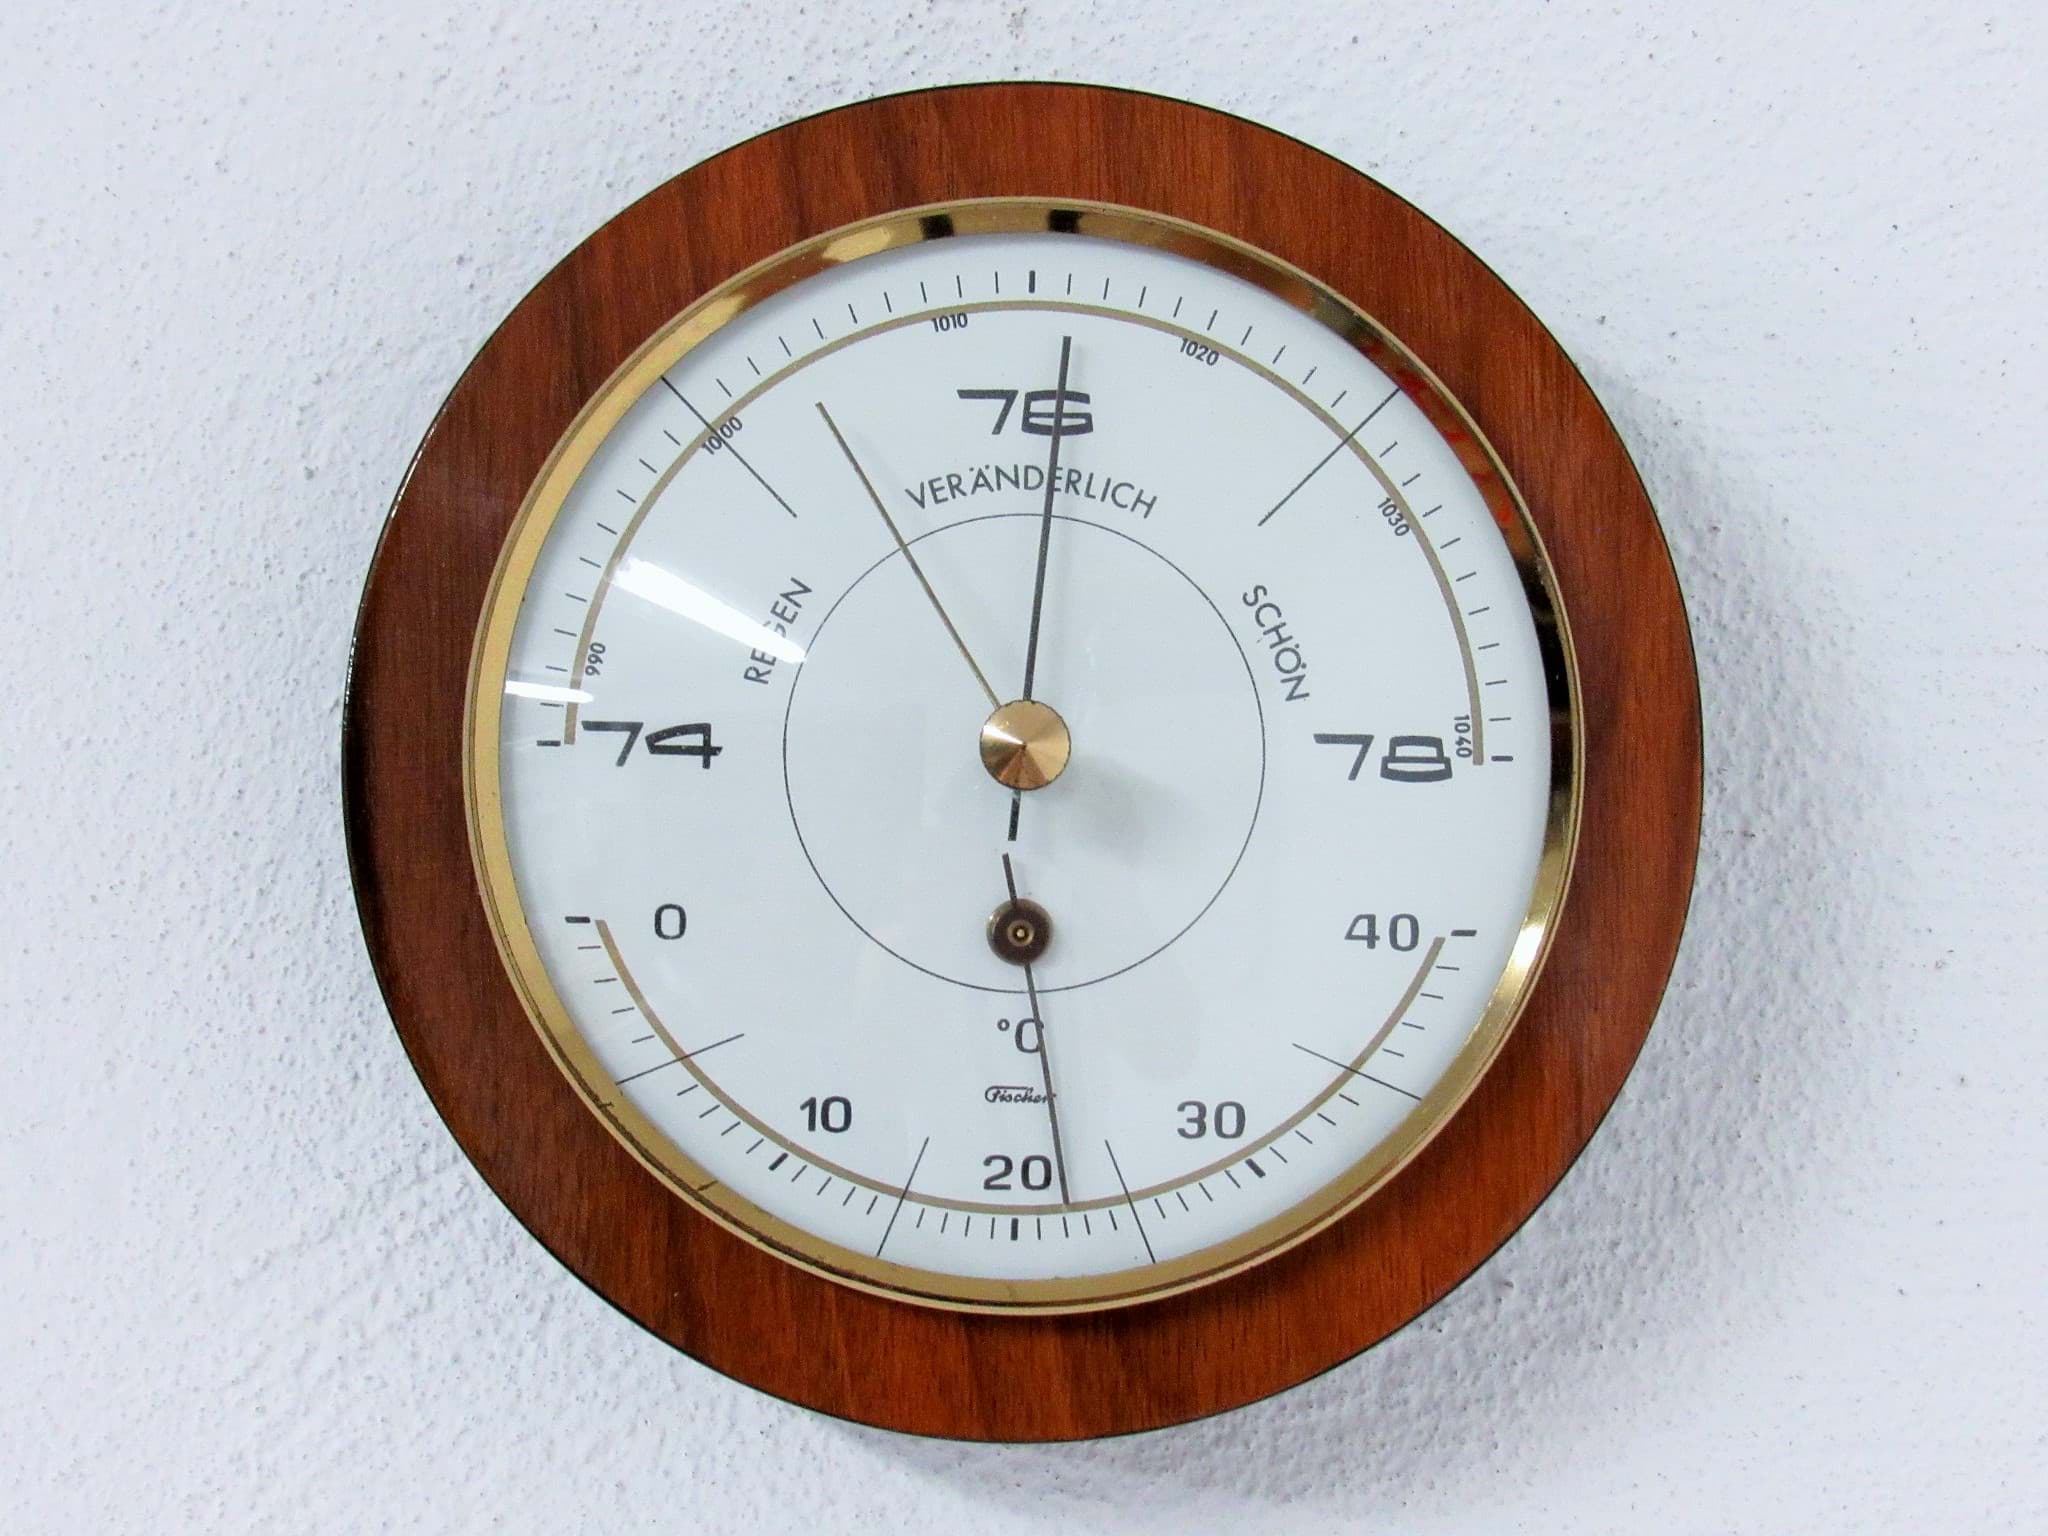 Picture of Runde Wetterstation mit Barometer & Thermometer um 1960/70, wohl Palisander Holz, Hersteller Fischer